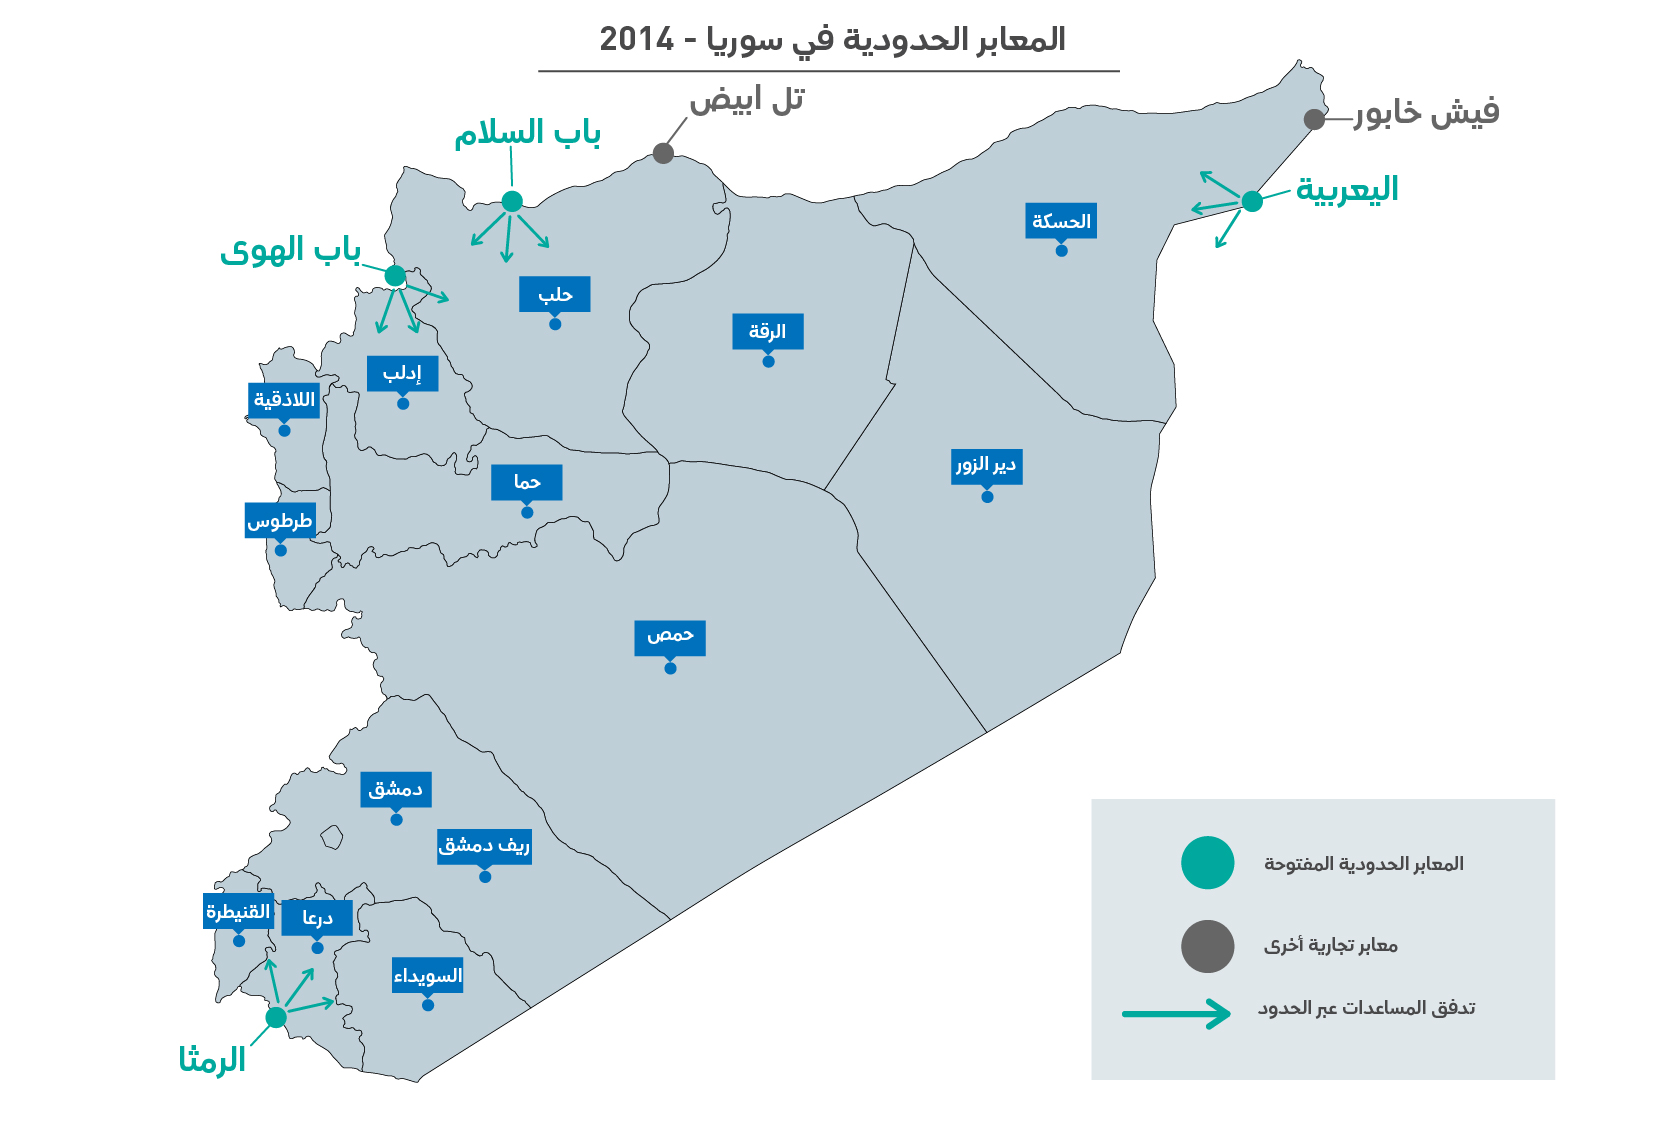 قرار مجلس الأمن الذي يقضي بعبور المساعدات عبر الحدود إلى سوريا 2014